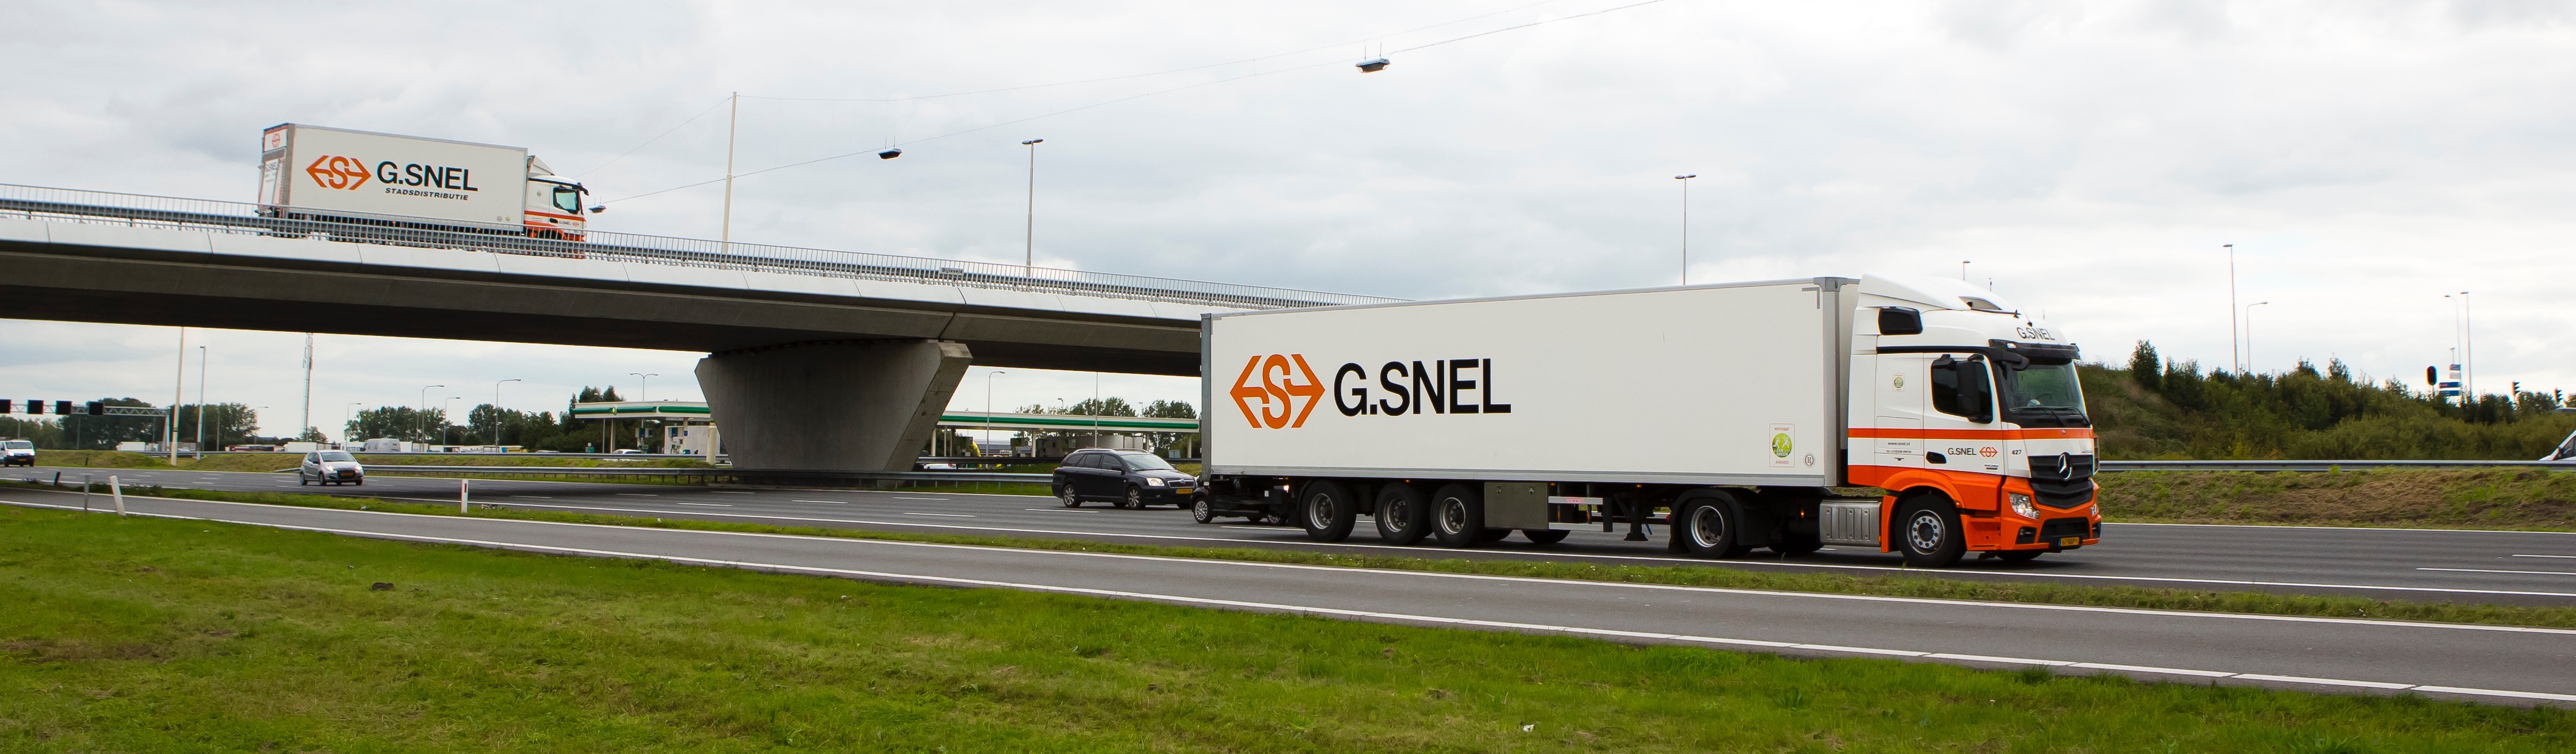 G.SNEL rijdt met een jonge vloot van trailercombinaties en bakwagens voor leveringen aan winkels en consumenten.